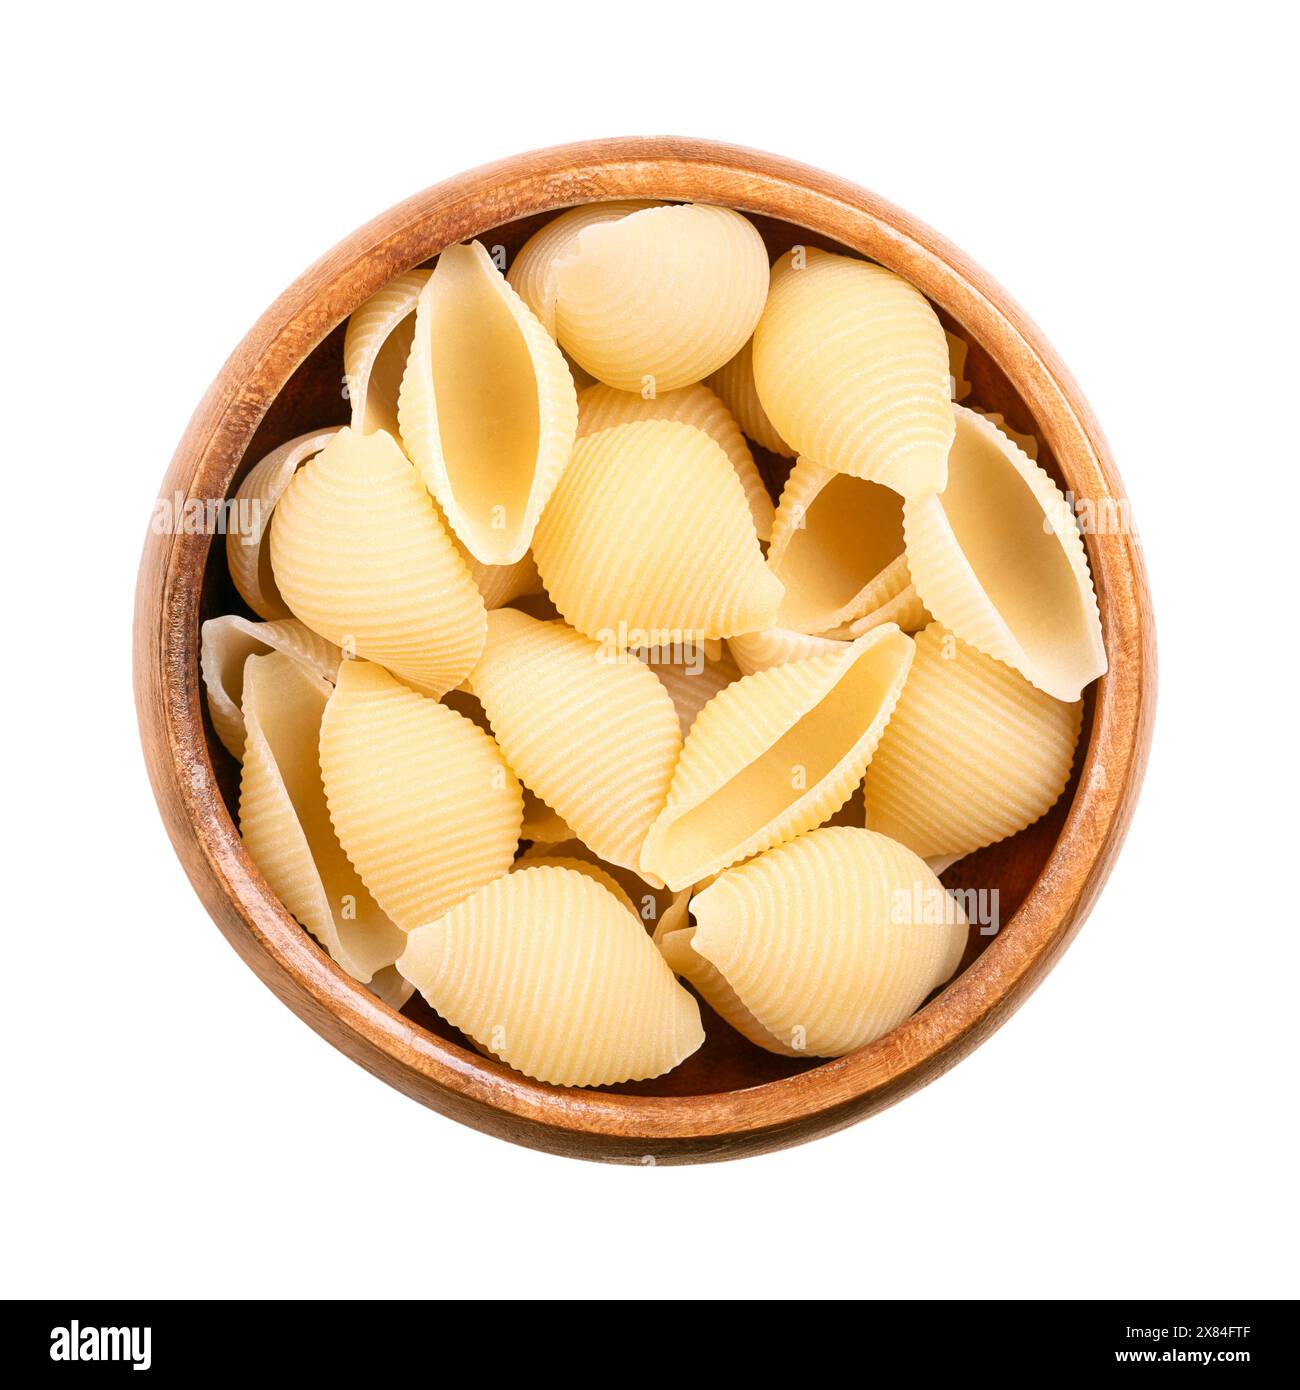 Conchiglie rigano la pasta italiana a conchiglia e a solco in una ciotola di legno. Pasta di semola di grano duro cruda. Primo piano, dall'alto. Foto Stock